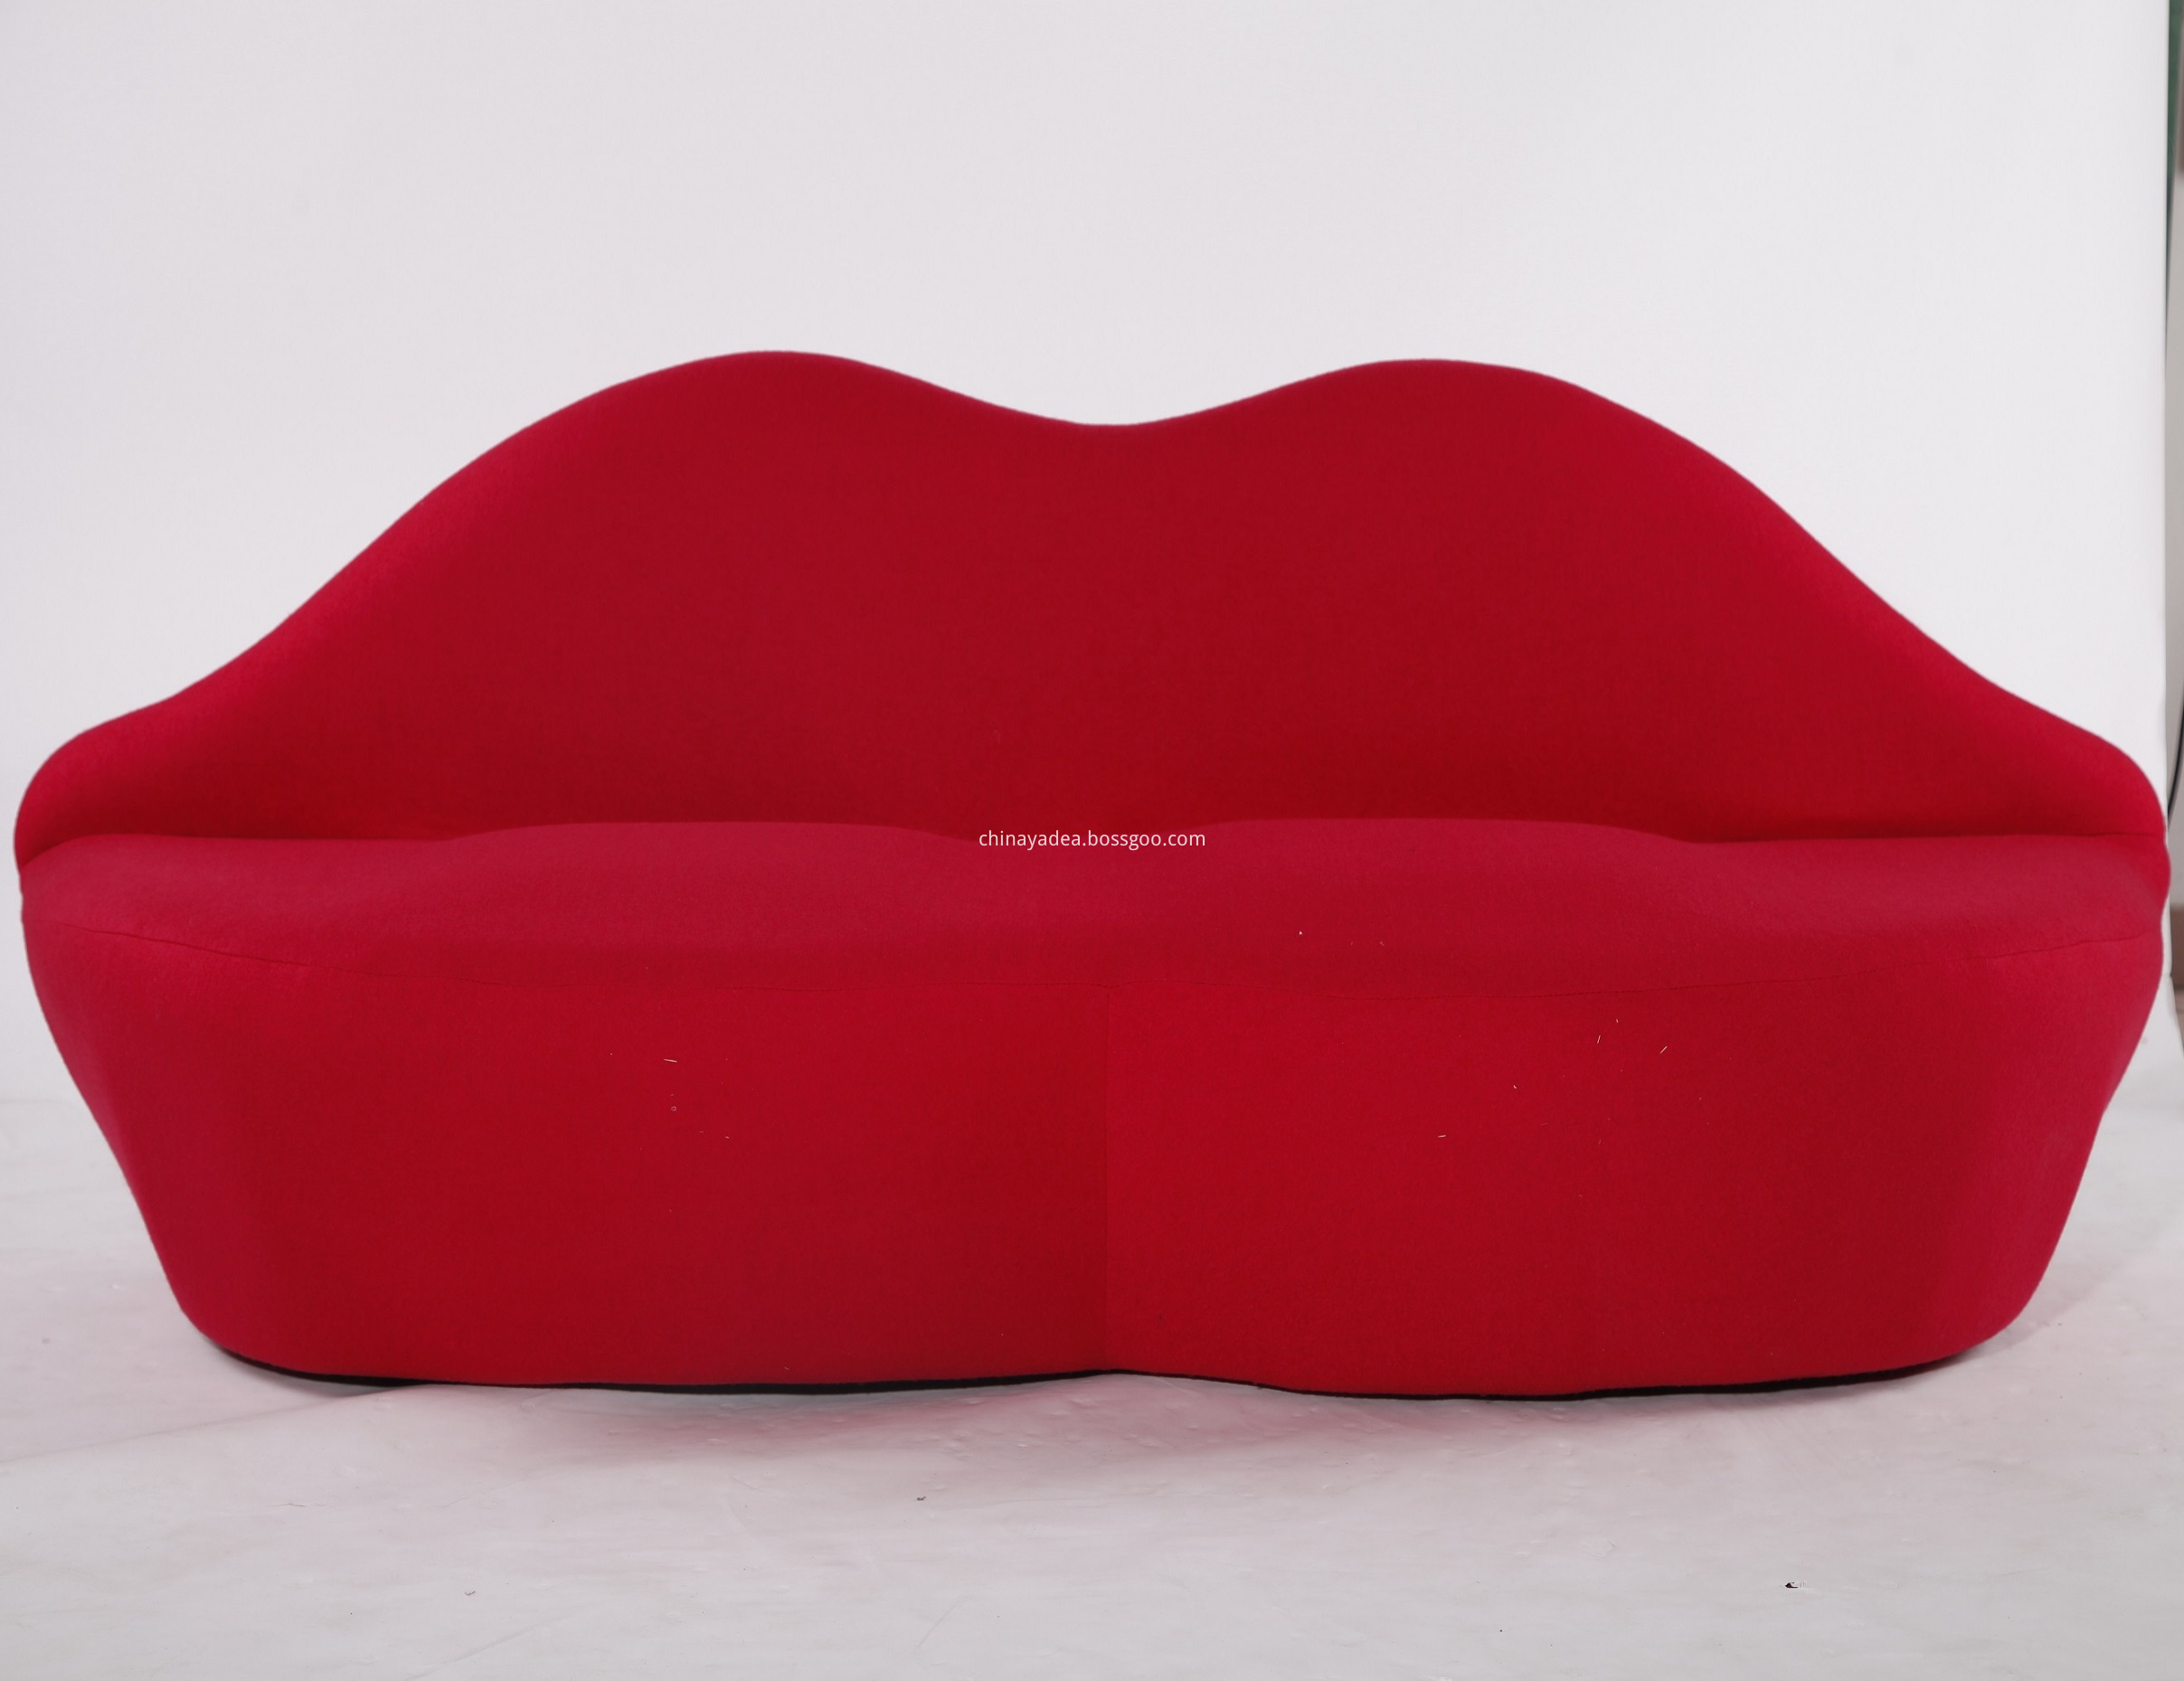 bocca red lip sofa replica